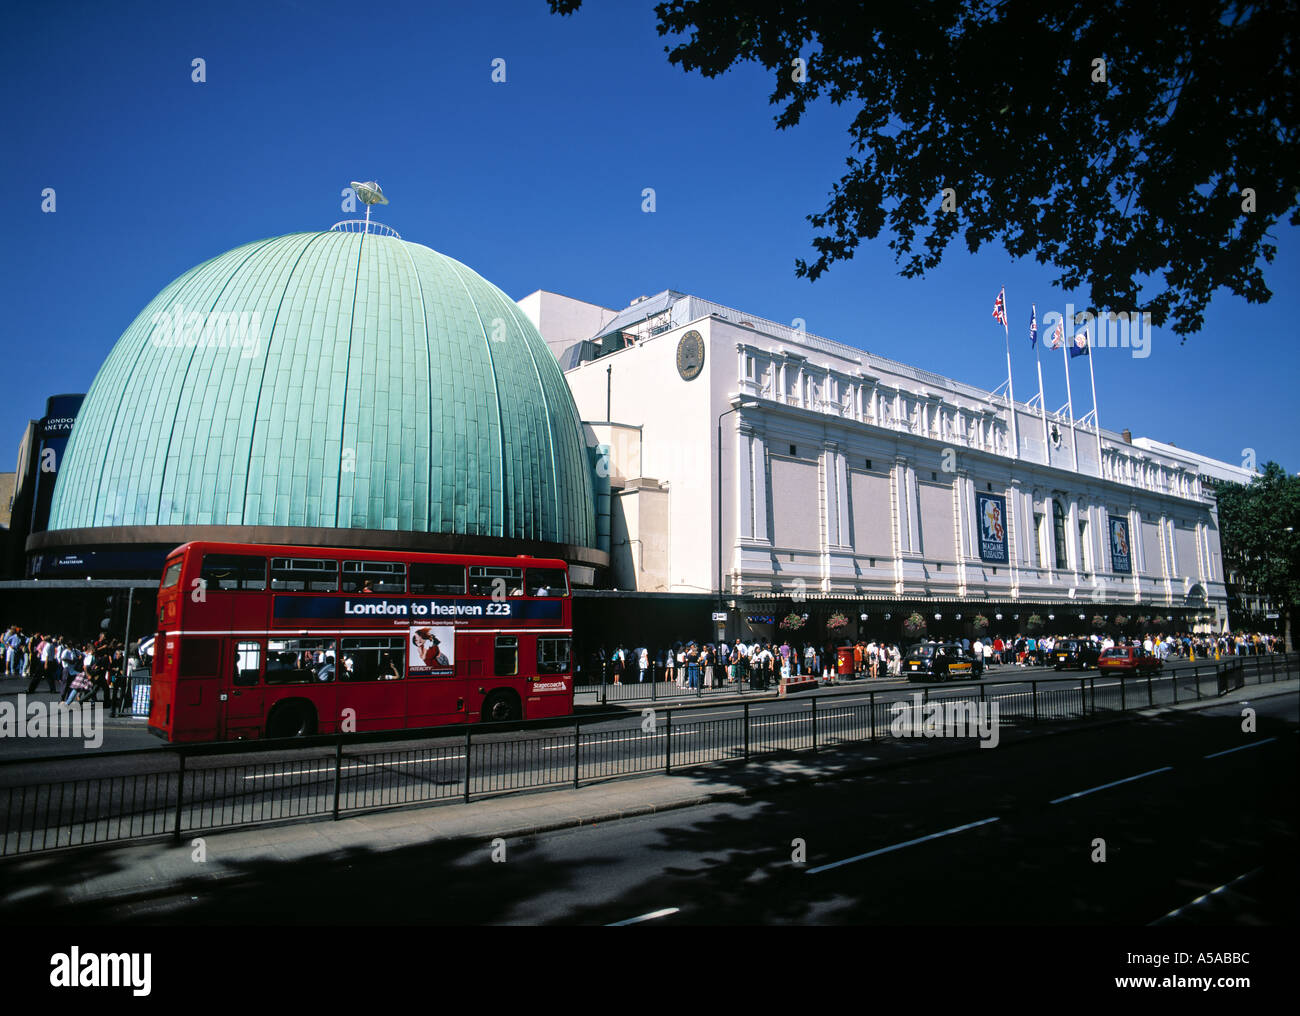 Planetarium & Madame Tussaud's, London, England Stock Photo